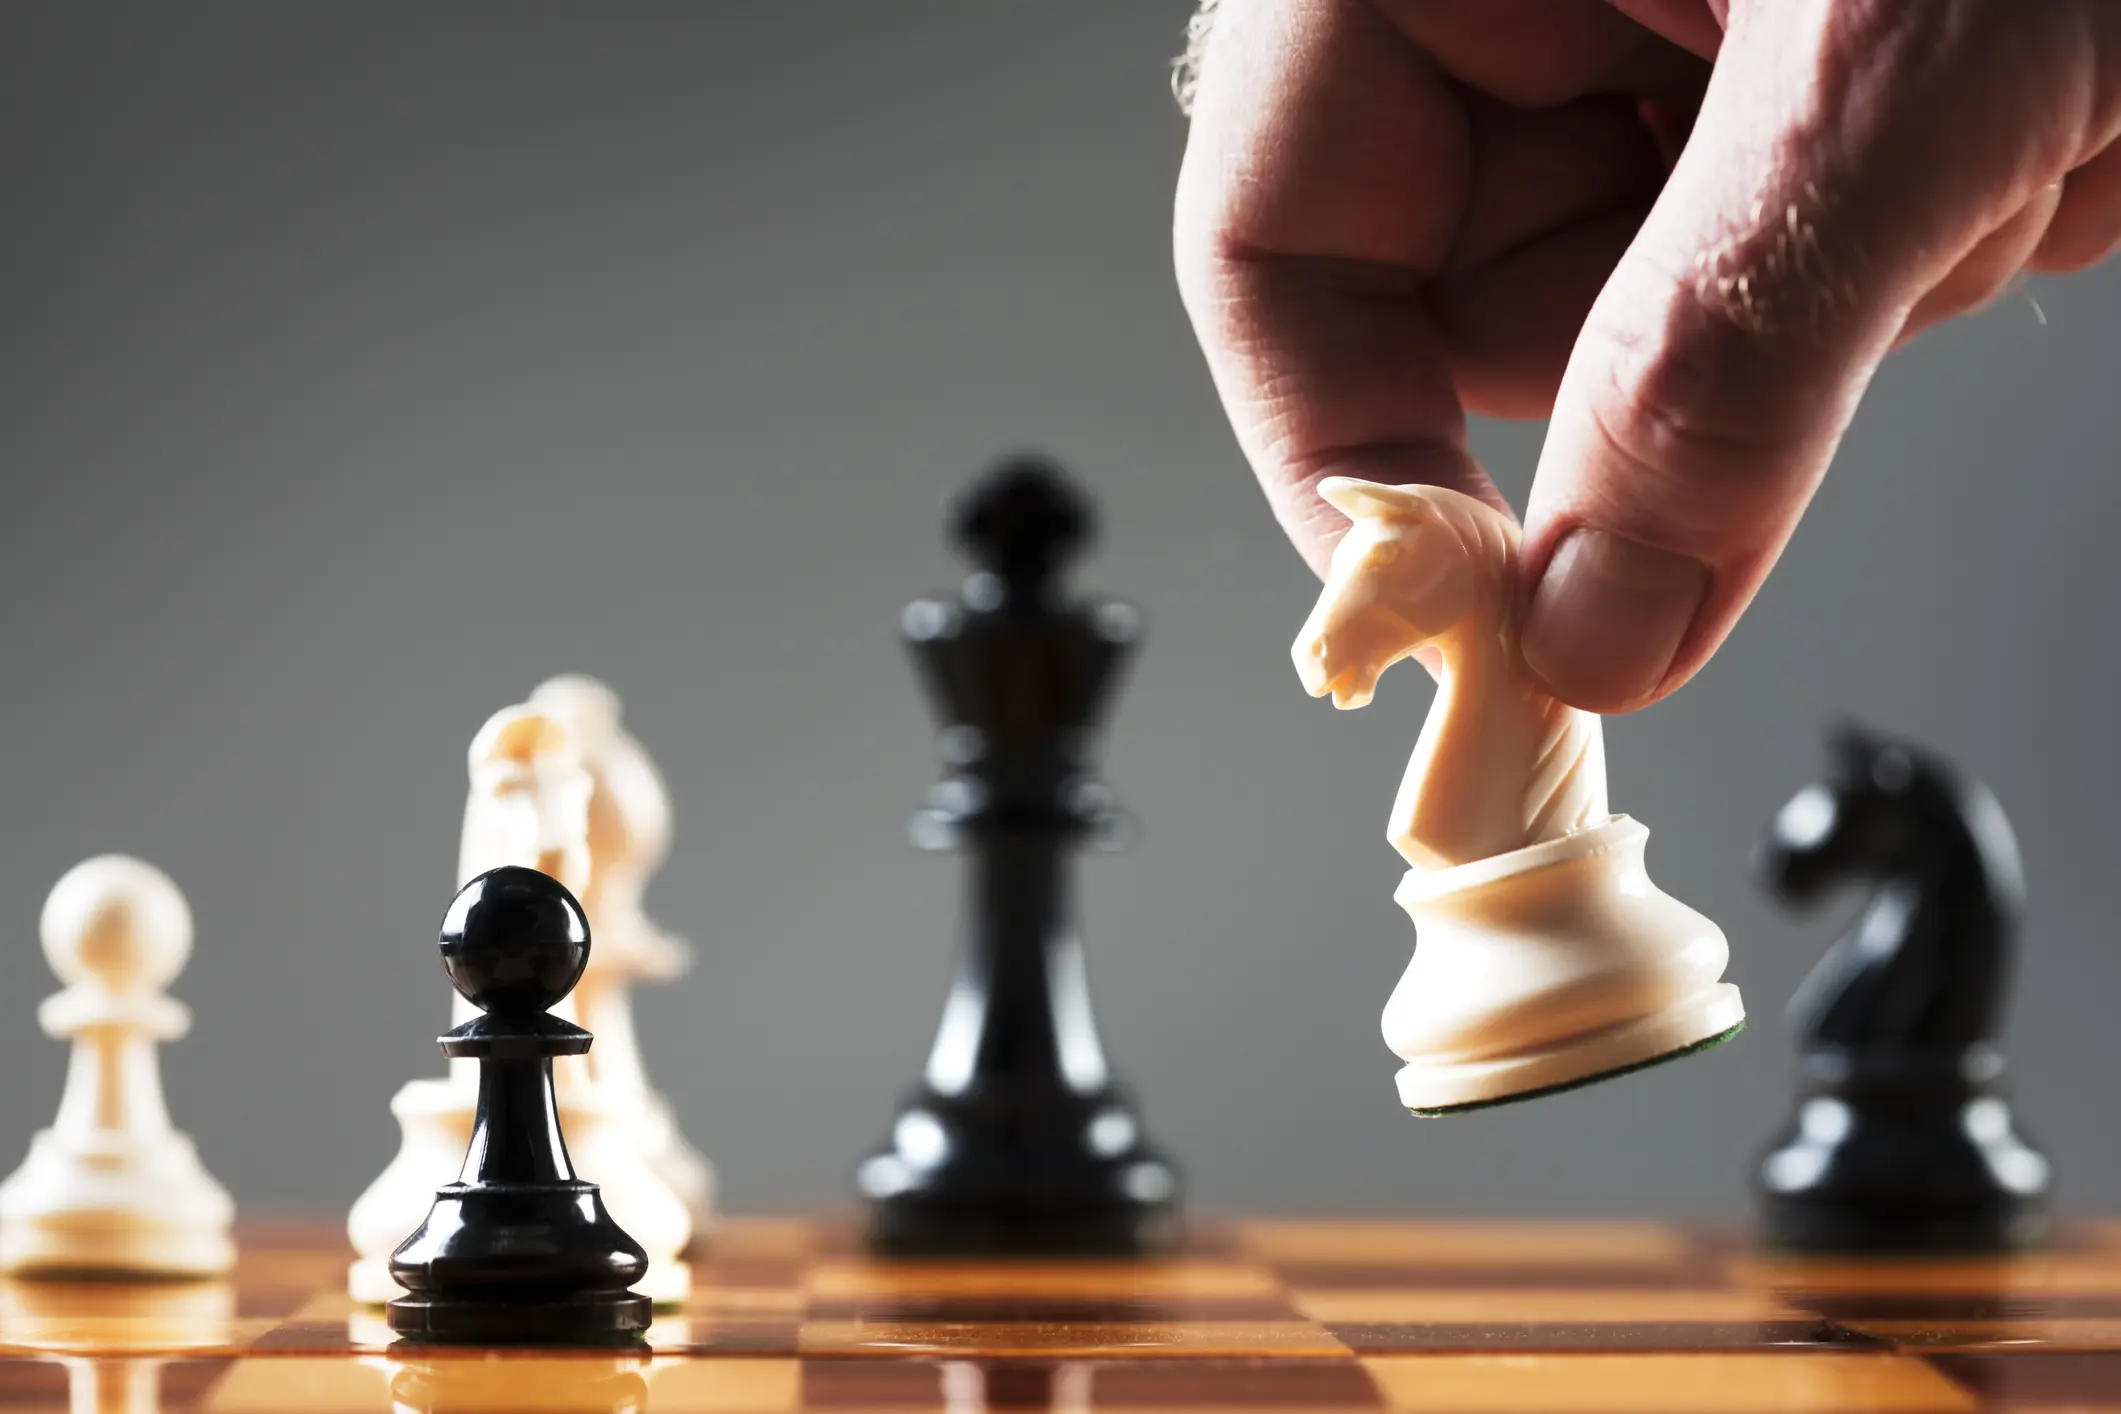 رقعة شطرنج تحسم الجدل بشأن "أذكى شركة في العالم"